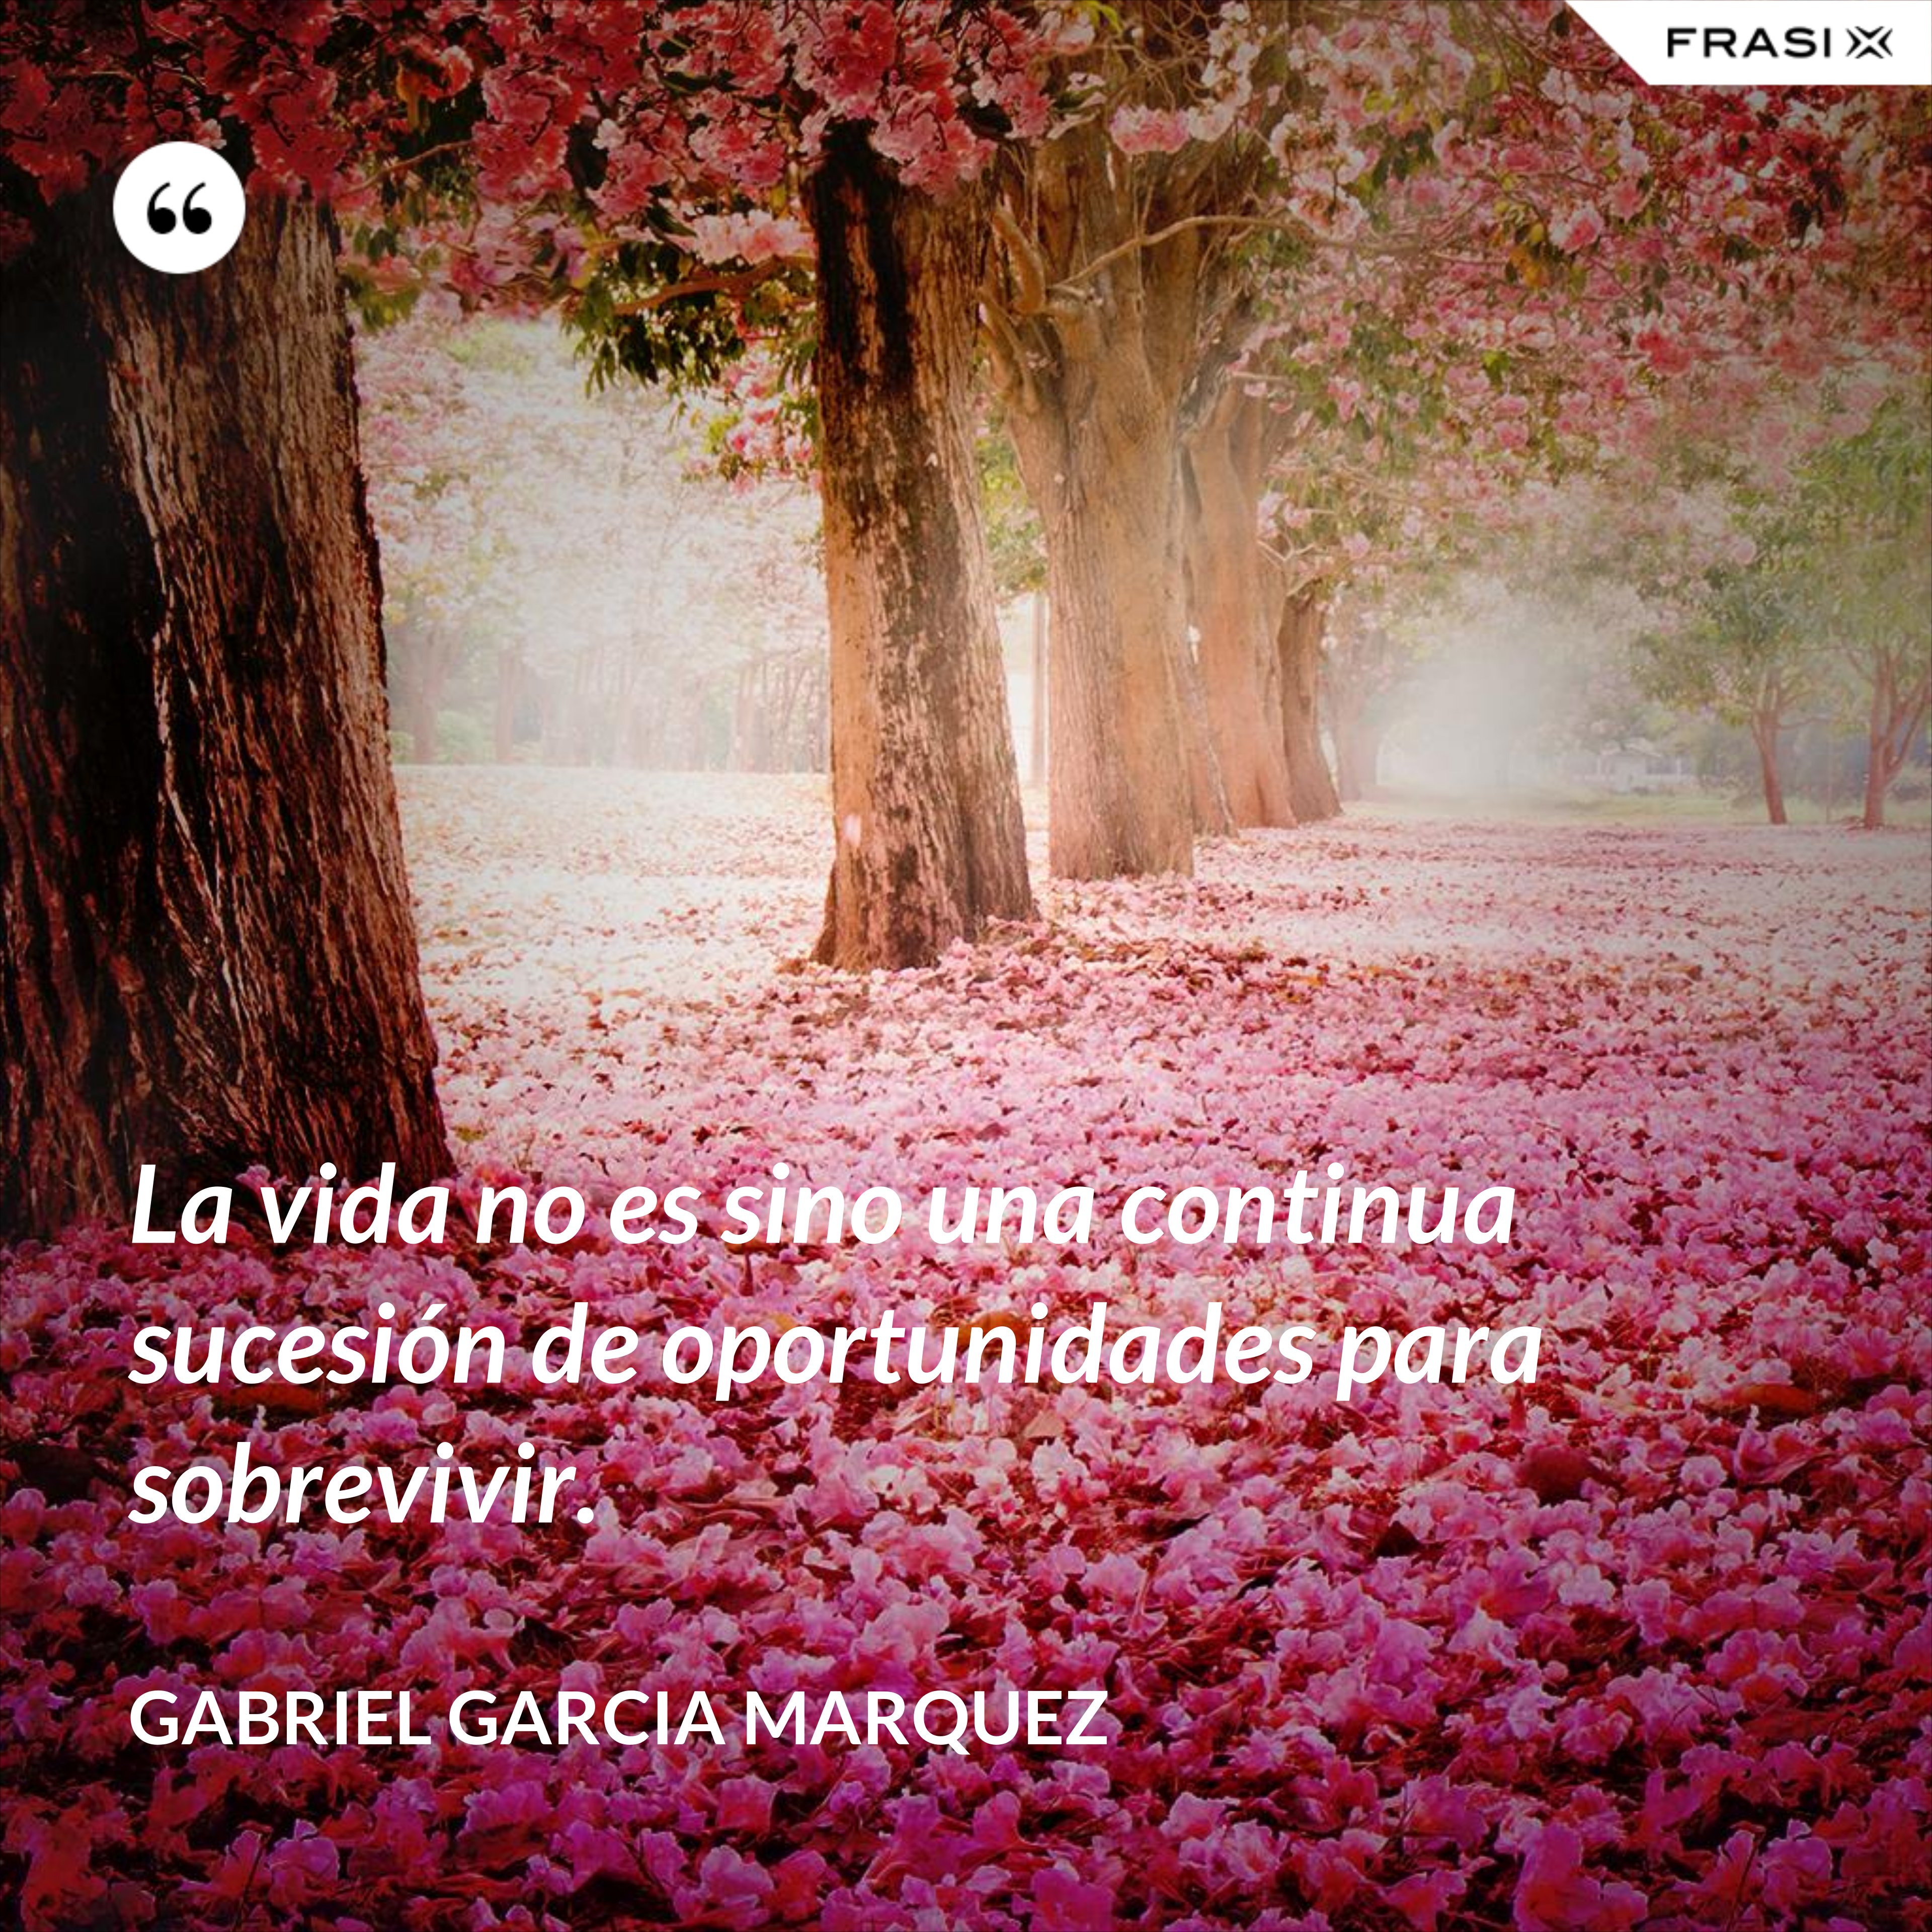 La vida no es sino una continua sucesión de oportunidades para sobrevivir. - Gabriel Garcia Marquez